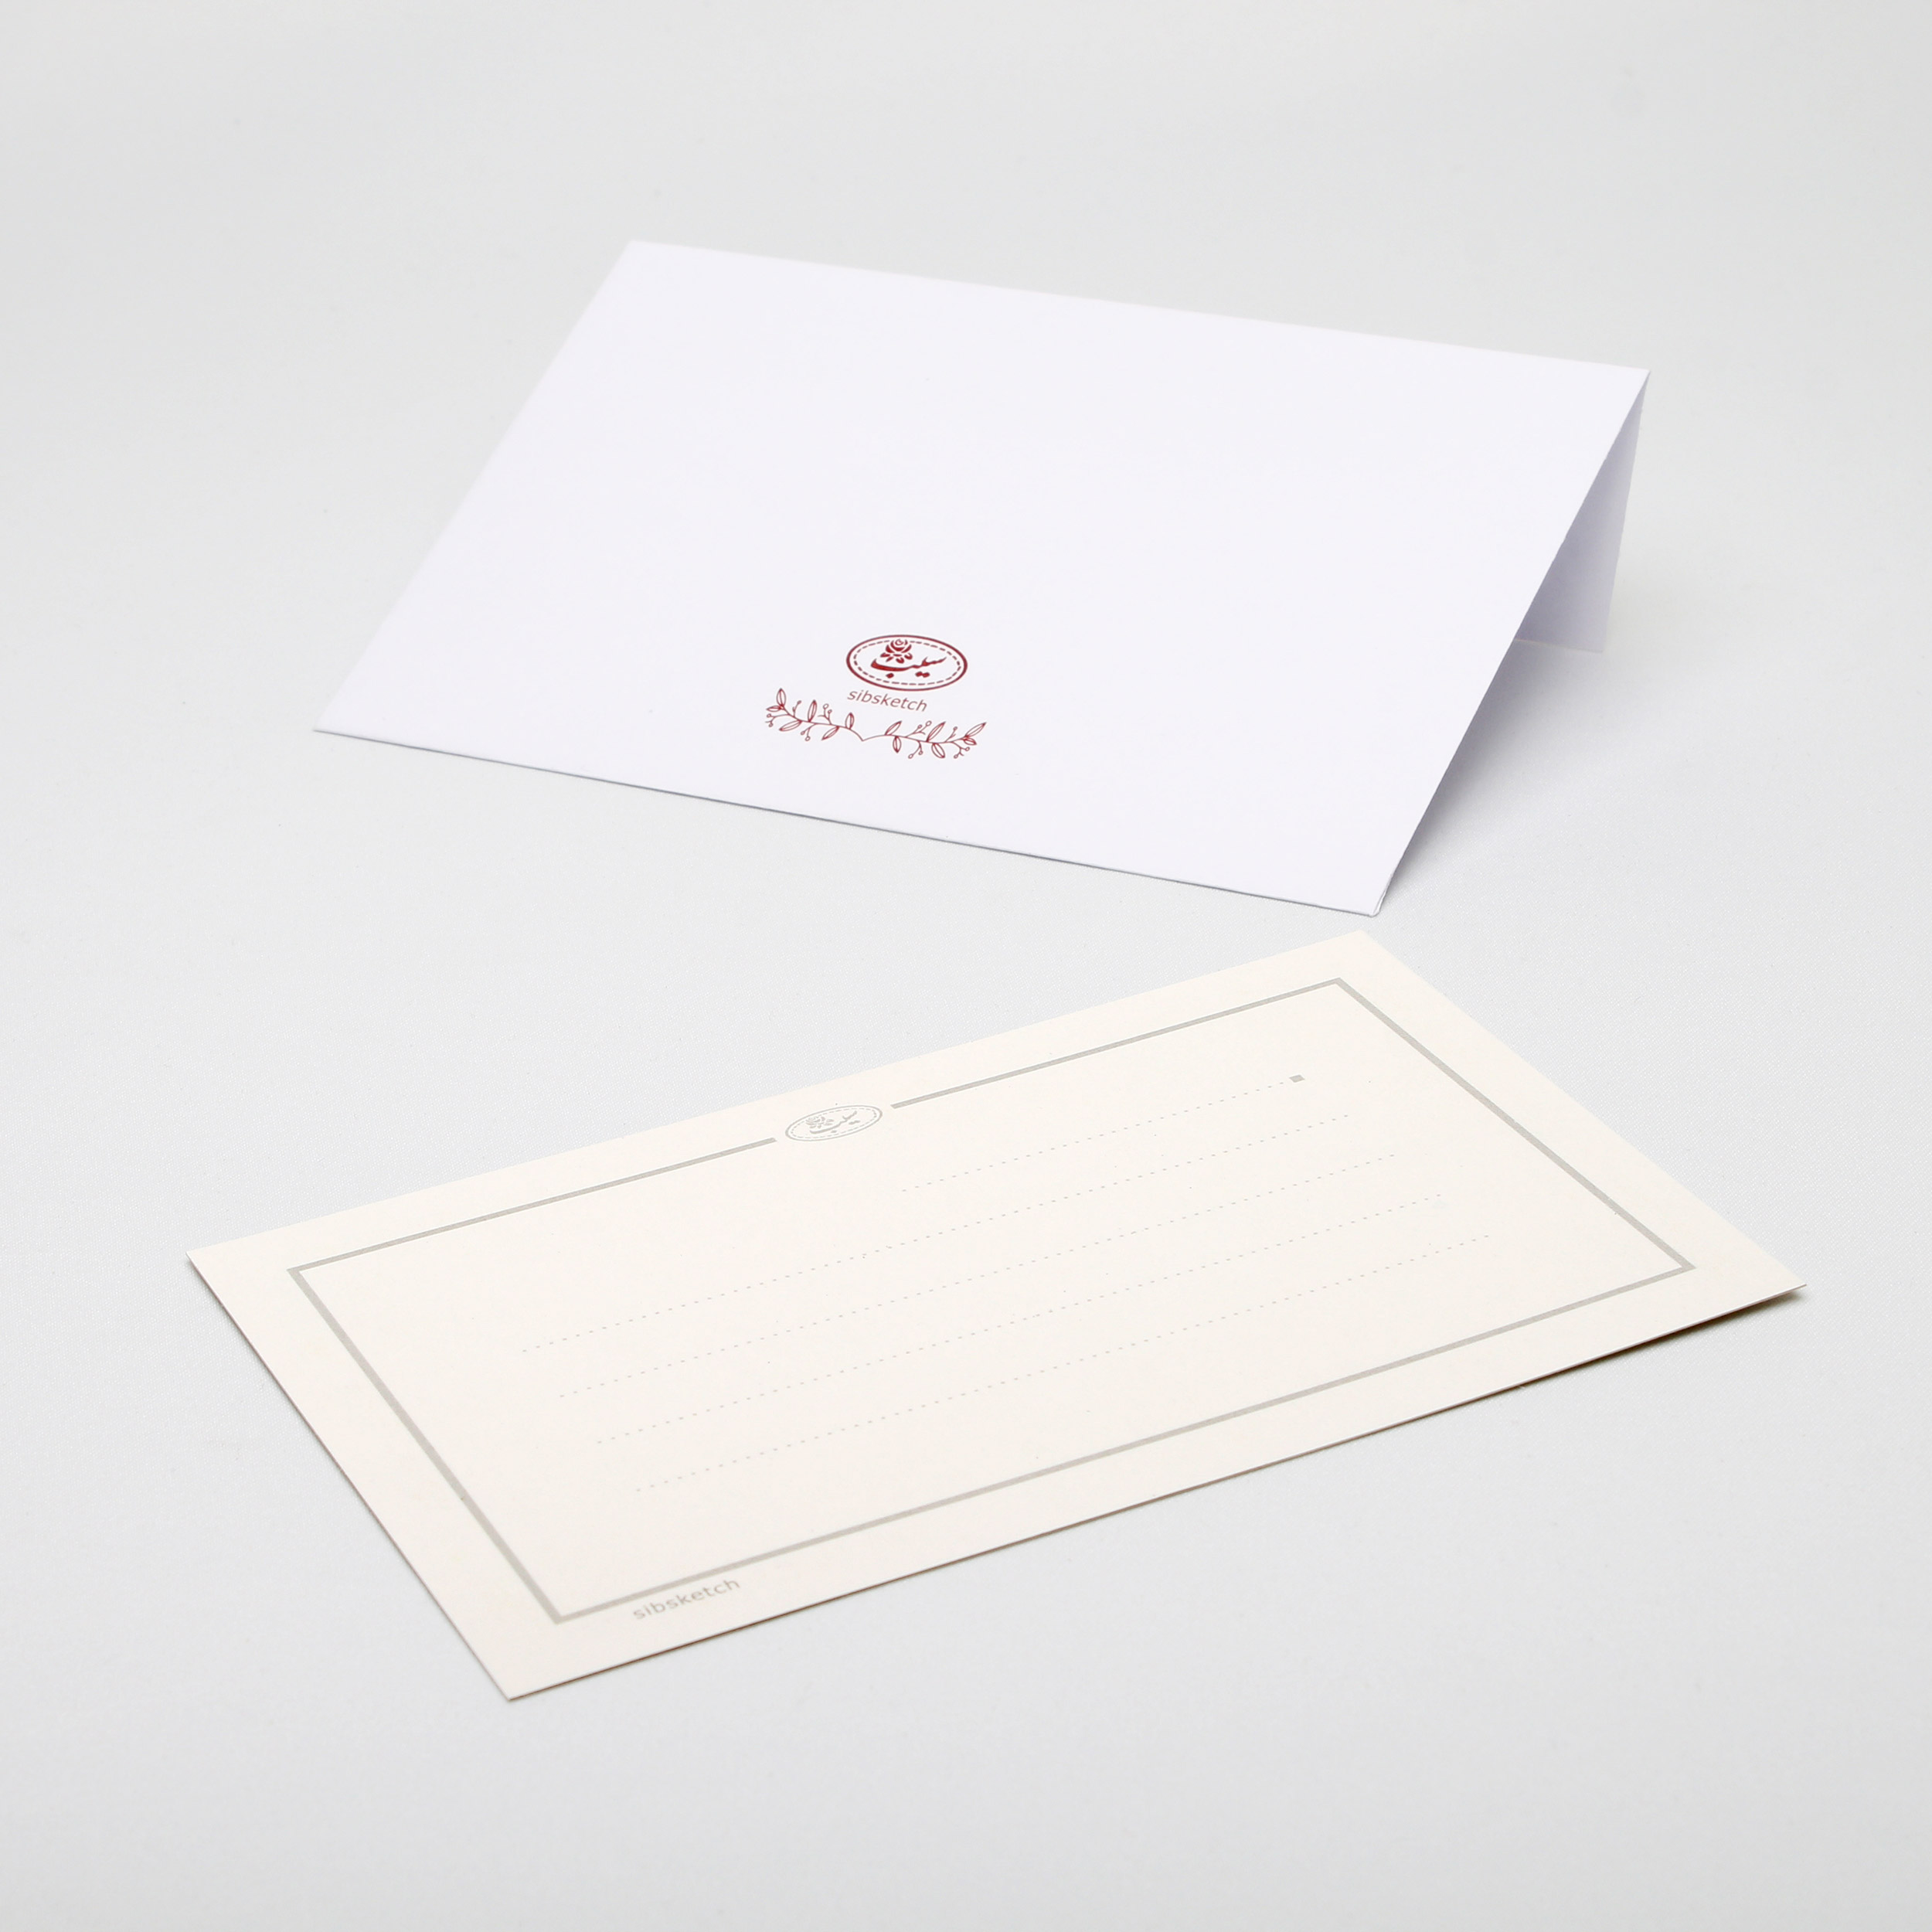 کارت پستال انتشارات سیبان مدل Postal Card-06 بسته 4 عددی